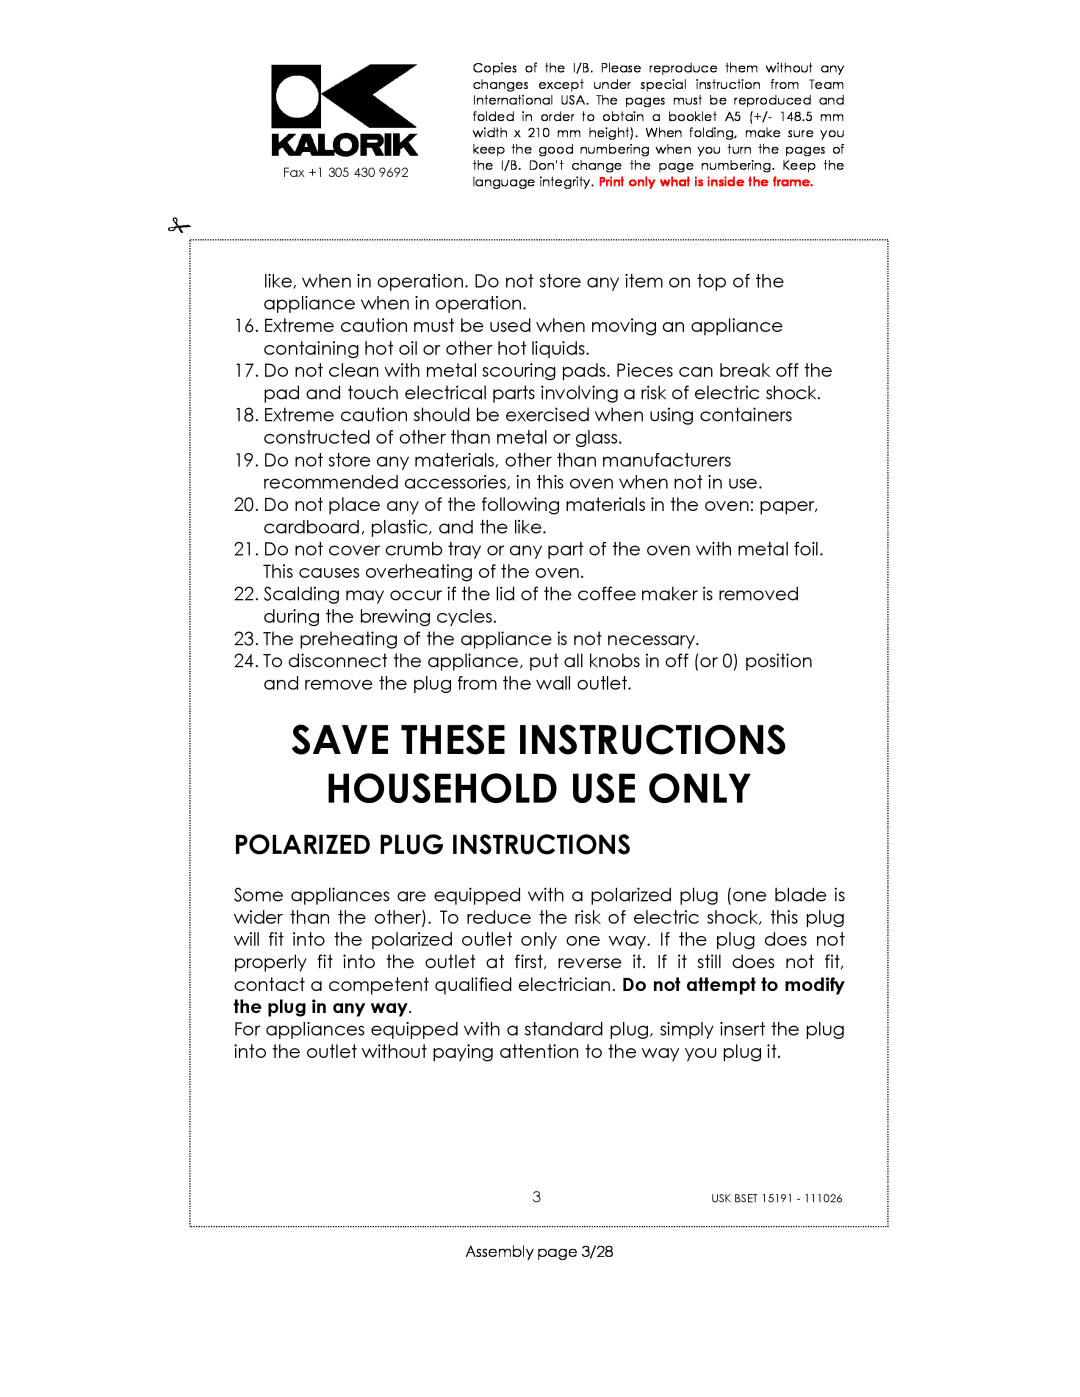 Kalorik USK BSET 15191 manual Save These Instructions Household Use Only, Polarized Plug Instructions 